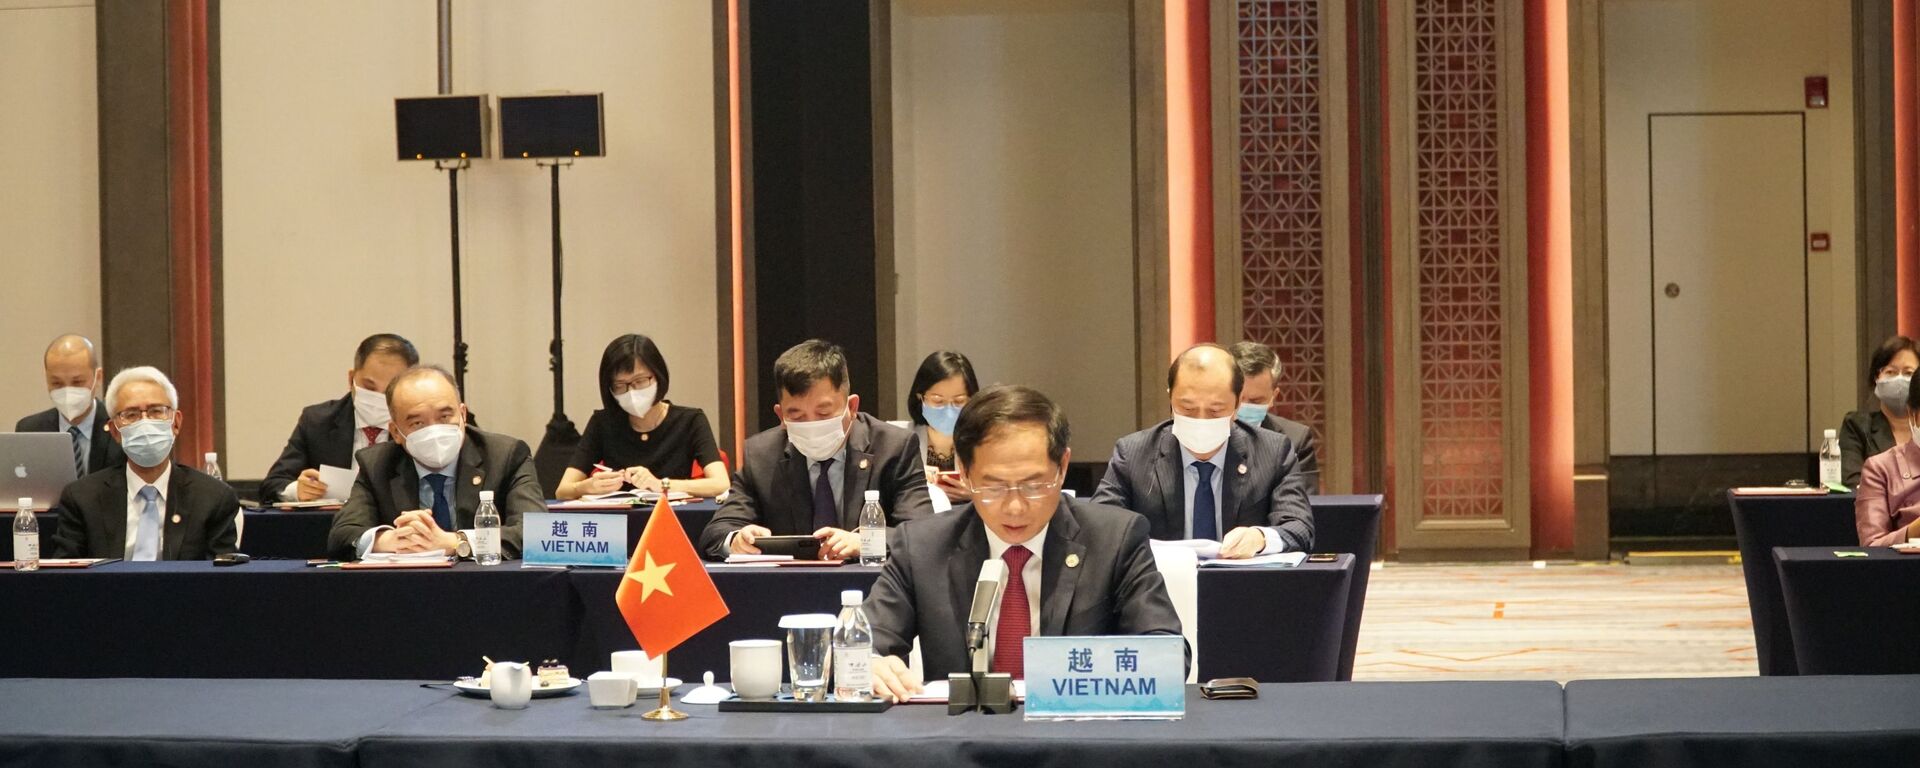 Bộ trưởng Ngoại giao Bùi Thanh Sơn tham dự Hội nghị đặc biệt Bộ trưởng Ngoại giao ASEAN - Trung Quốc.  - Sputnik Việt Nam, 1920, 08.06.2021